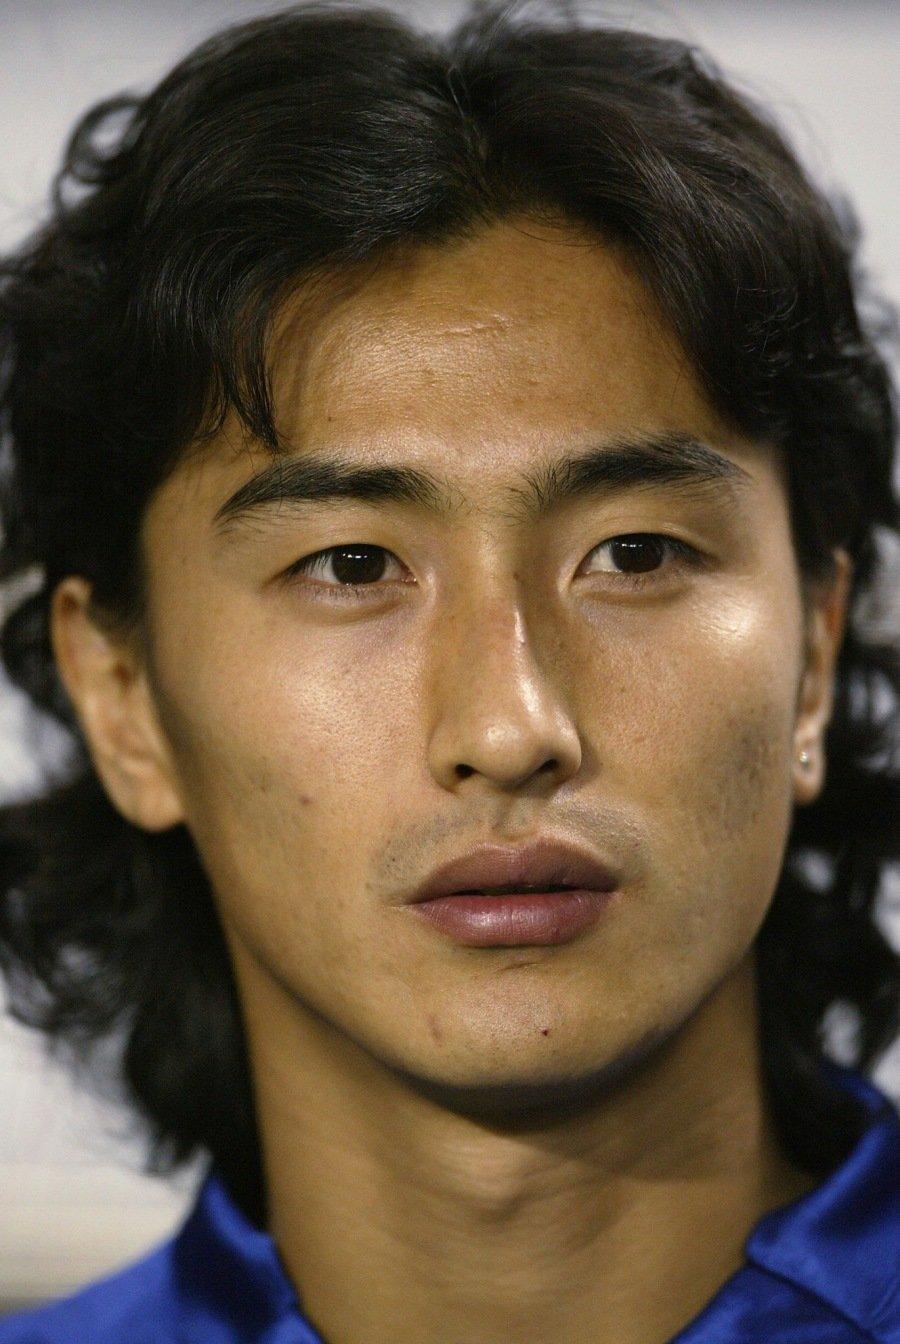 大韓民国の運動選手の中で一番ハンサムな人、ツートップjpg